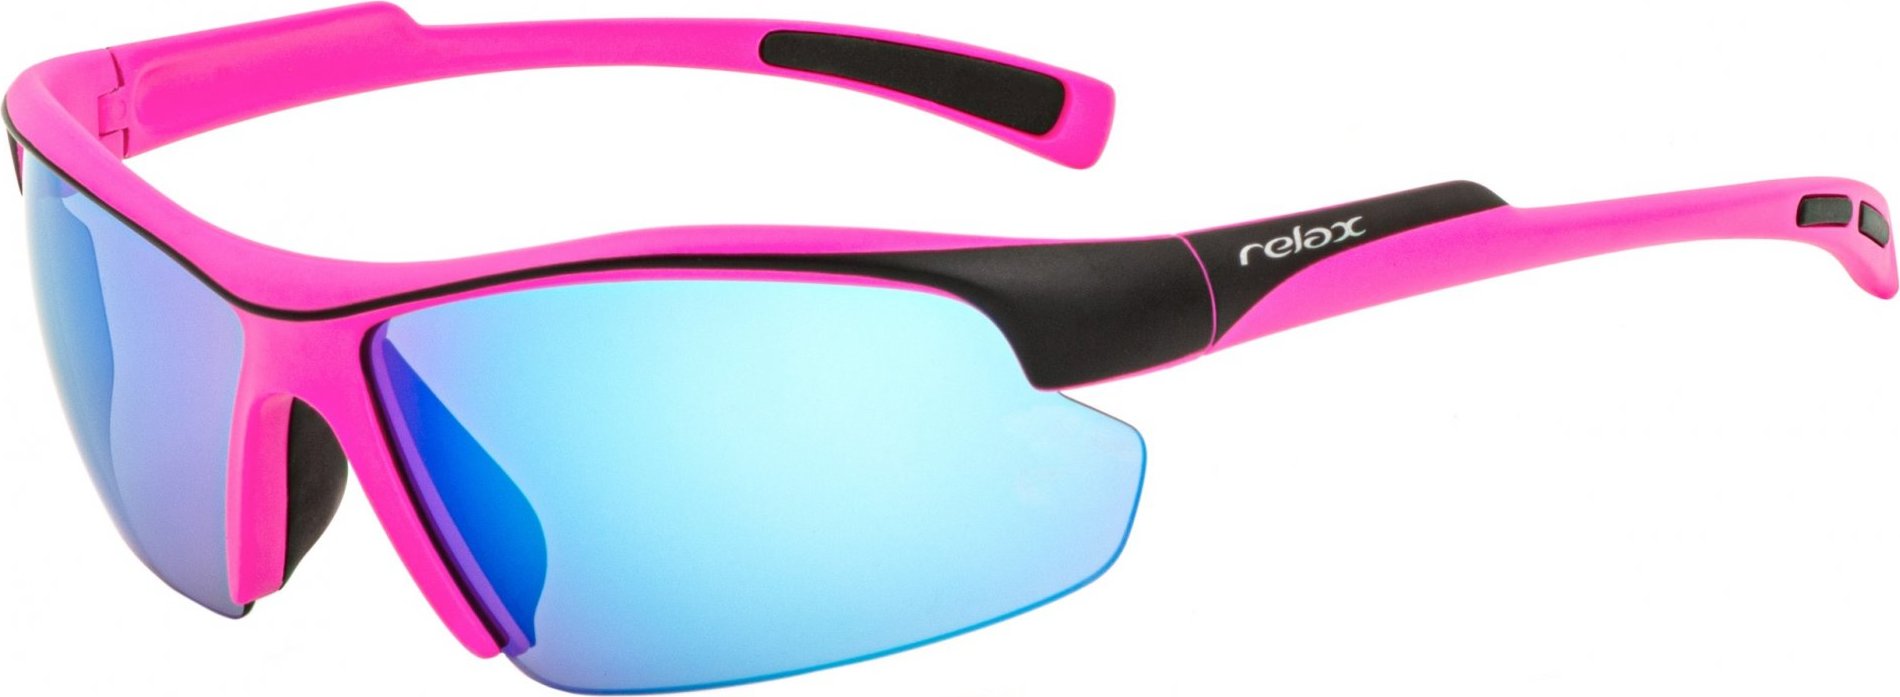 Sportovní sluneční brýle RELAX Lavezzi růžové